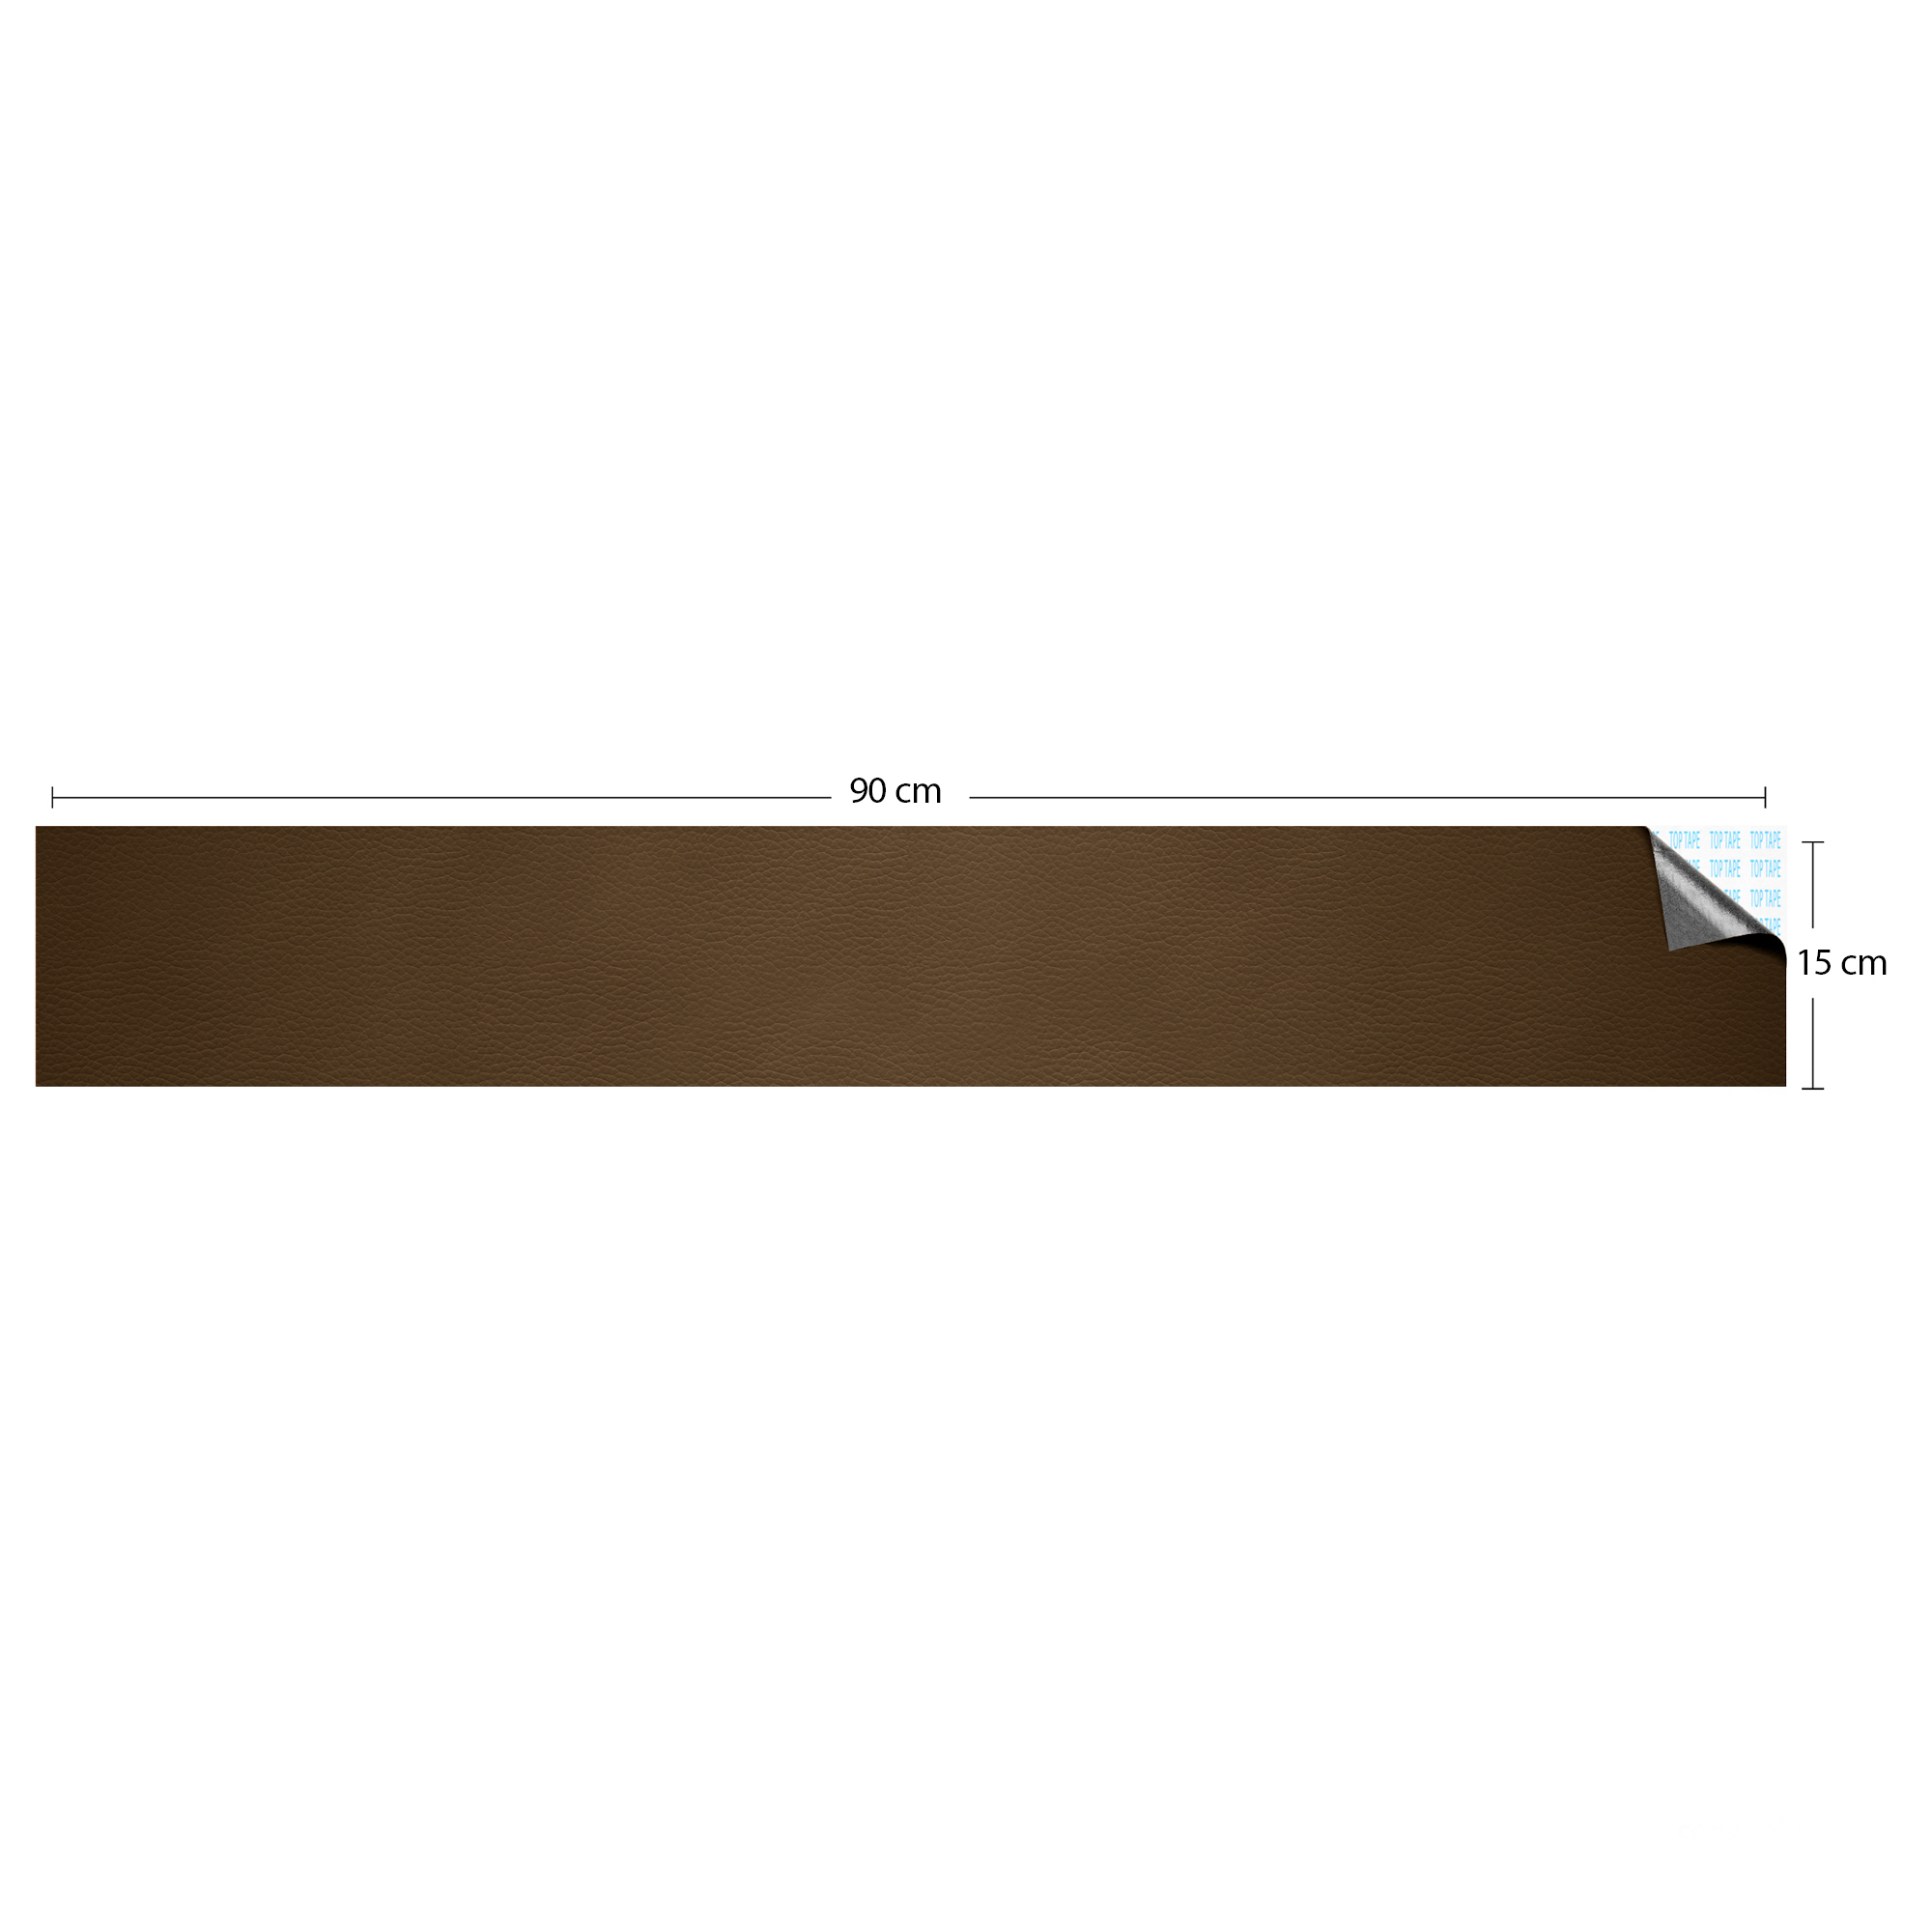 چسب چرمی نادیاهوم مدل brown15 طول 90 سانتی متر